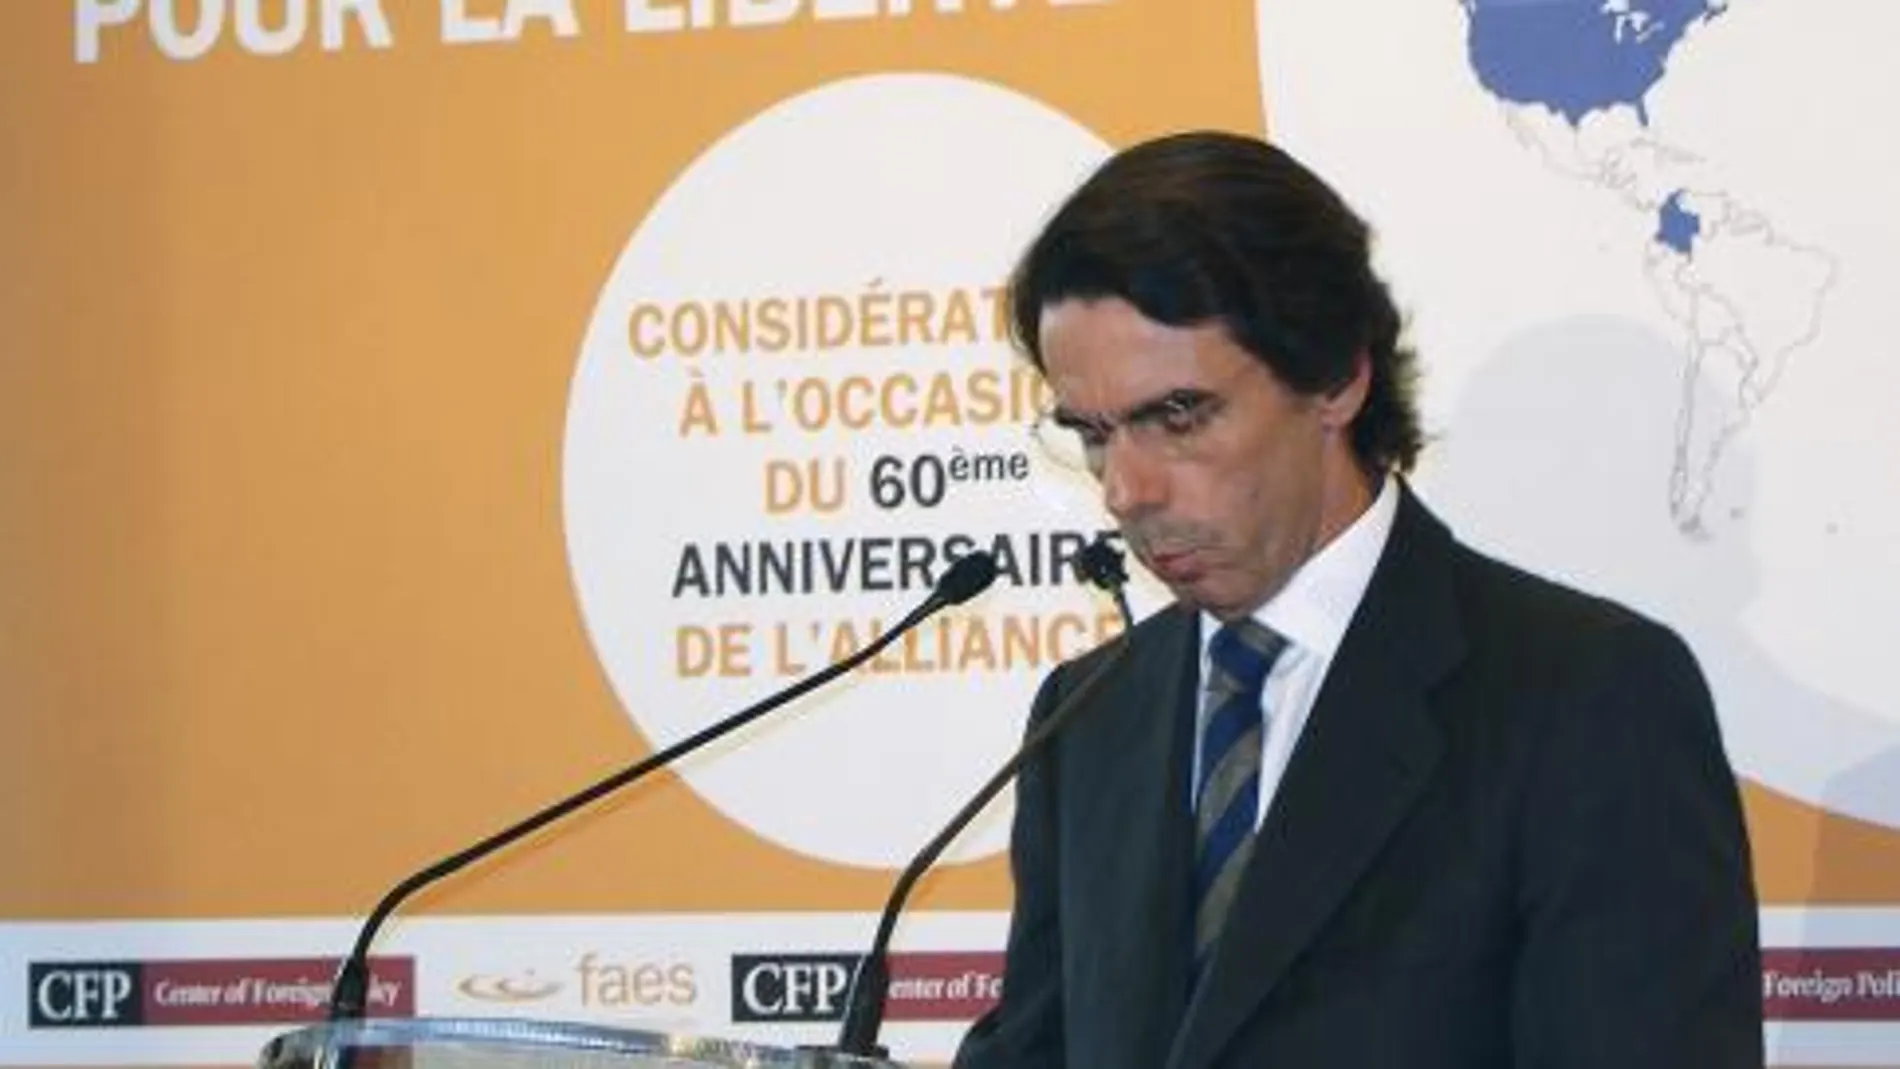 Aznar interviene en la presentación de la actualización del informe "OTAN: una alianza por la libertad"celebrado en París el 26/03/09